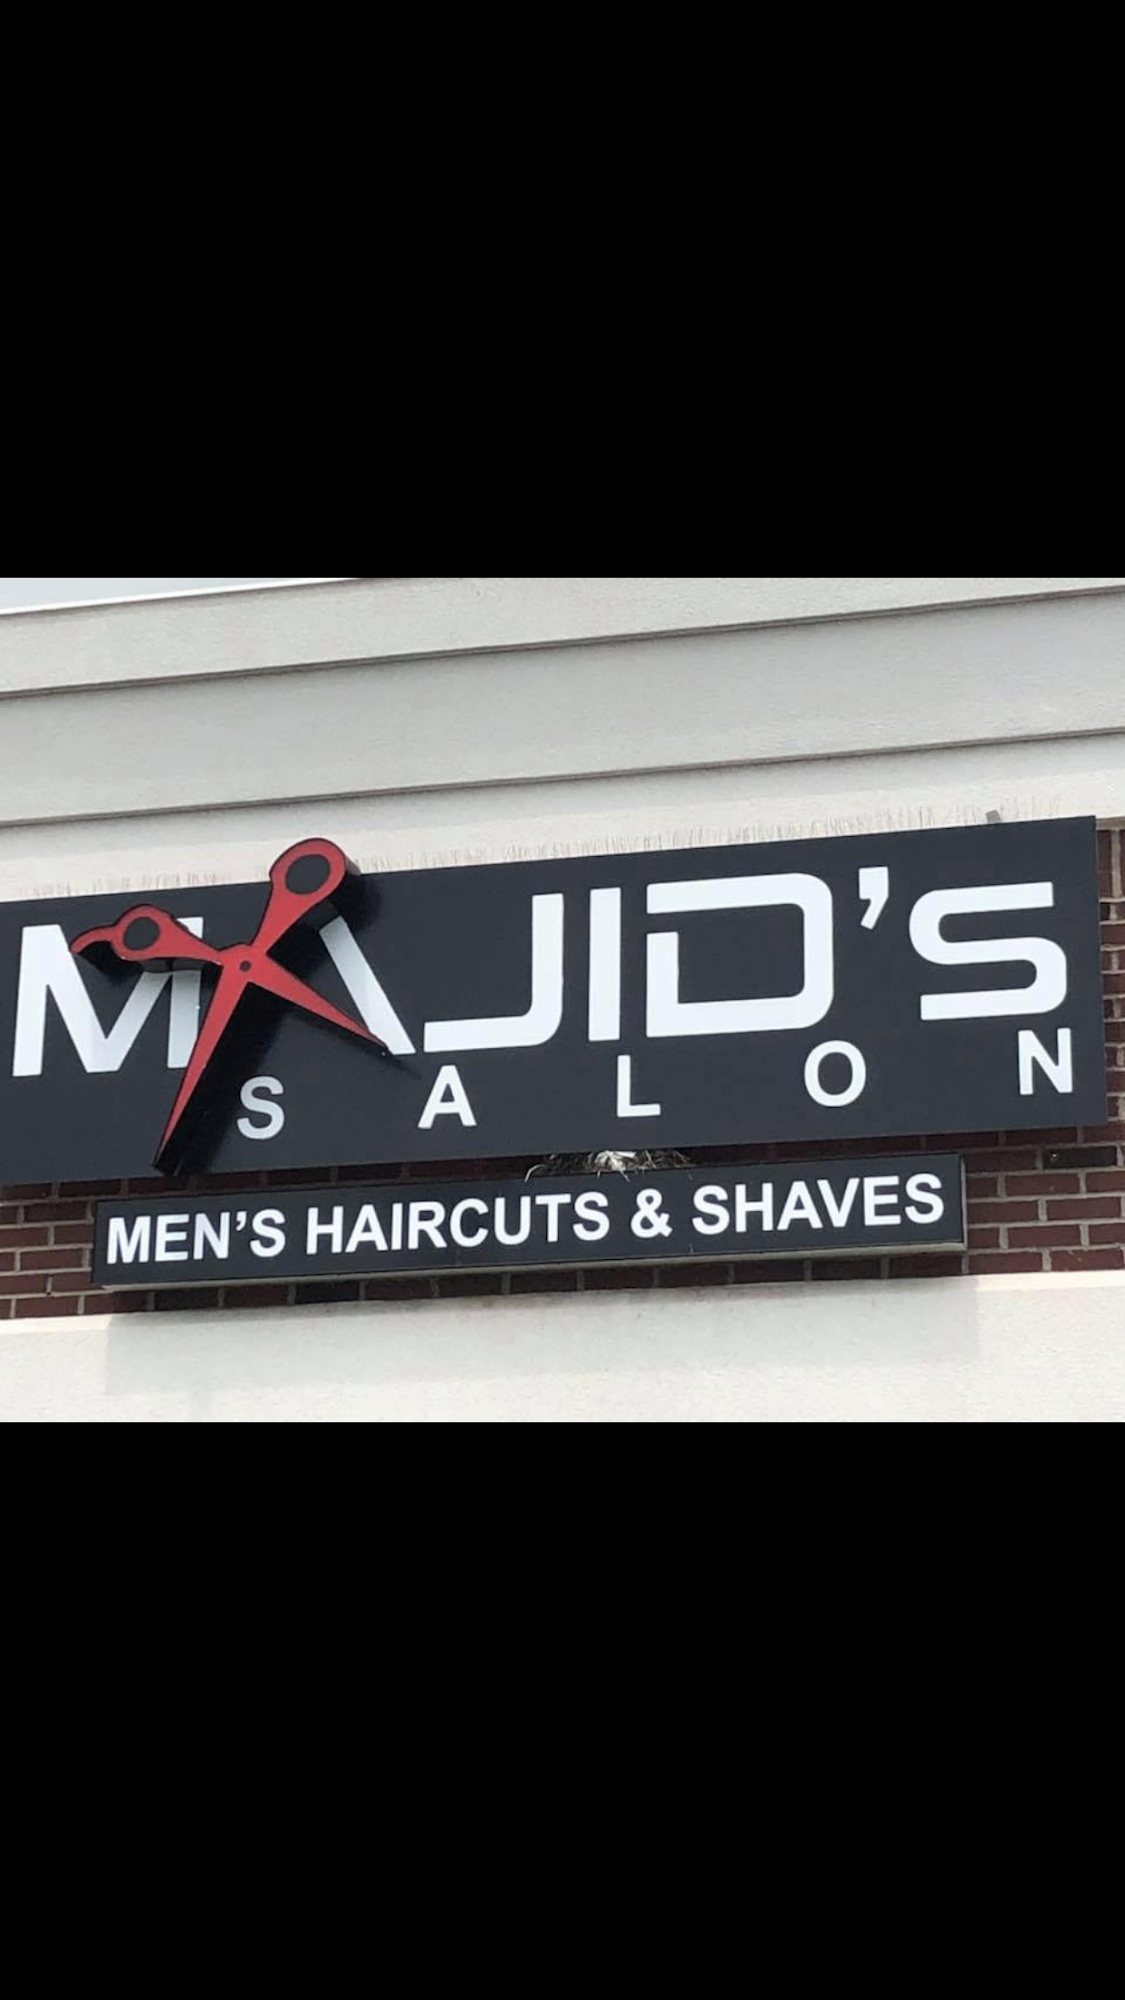 Majid's Hair Salon